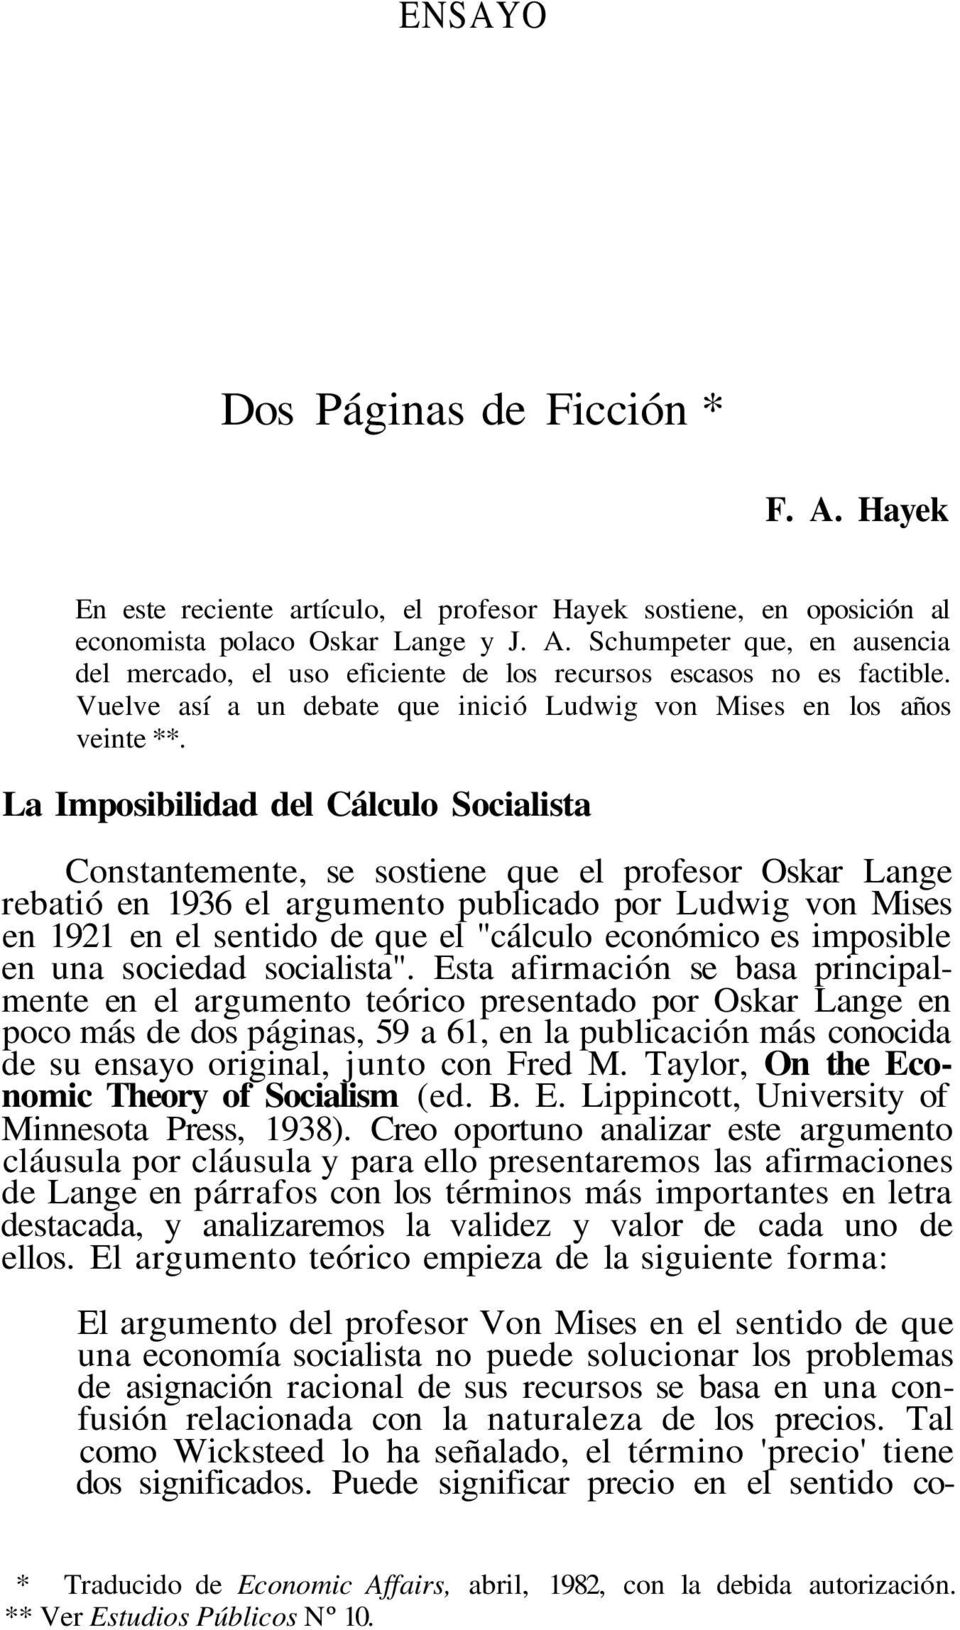 La Imposibilidad del Cálculo Socialista Constantemente, se sostiene que el profesor Oskar Lange rebatió en 1936 el argumento publicado por Ludwig von Mises en 1921 en el sentido de que el "cálculo